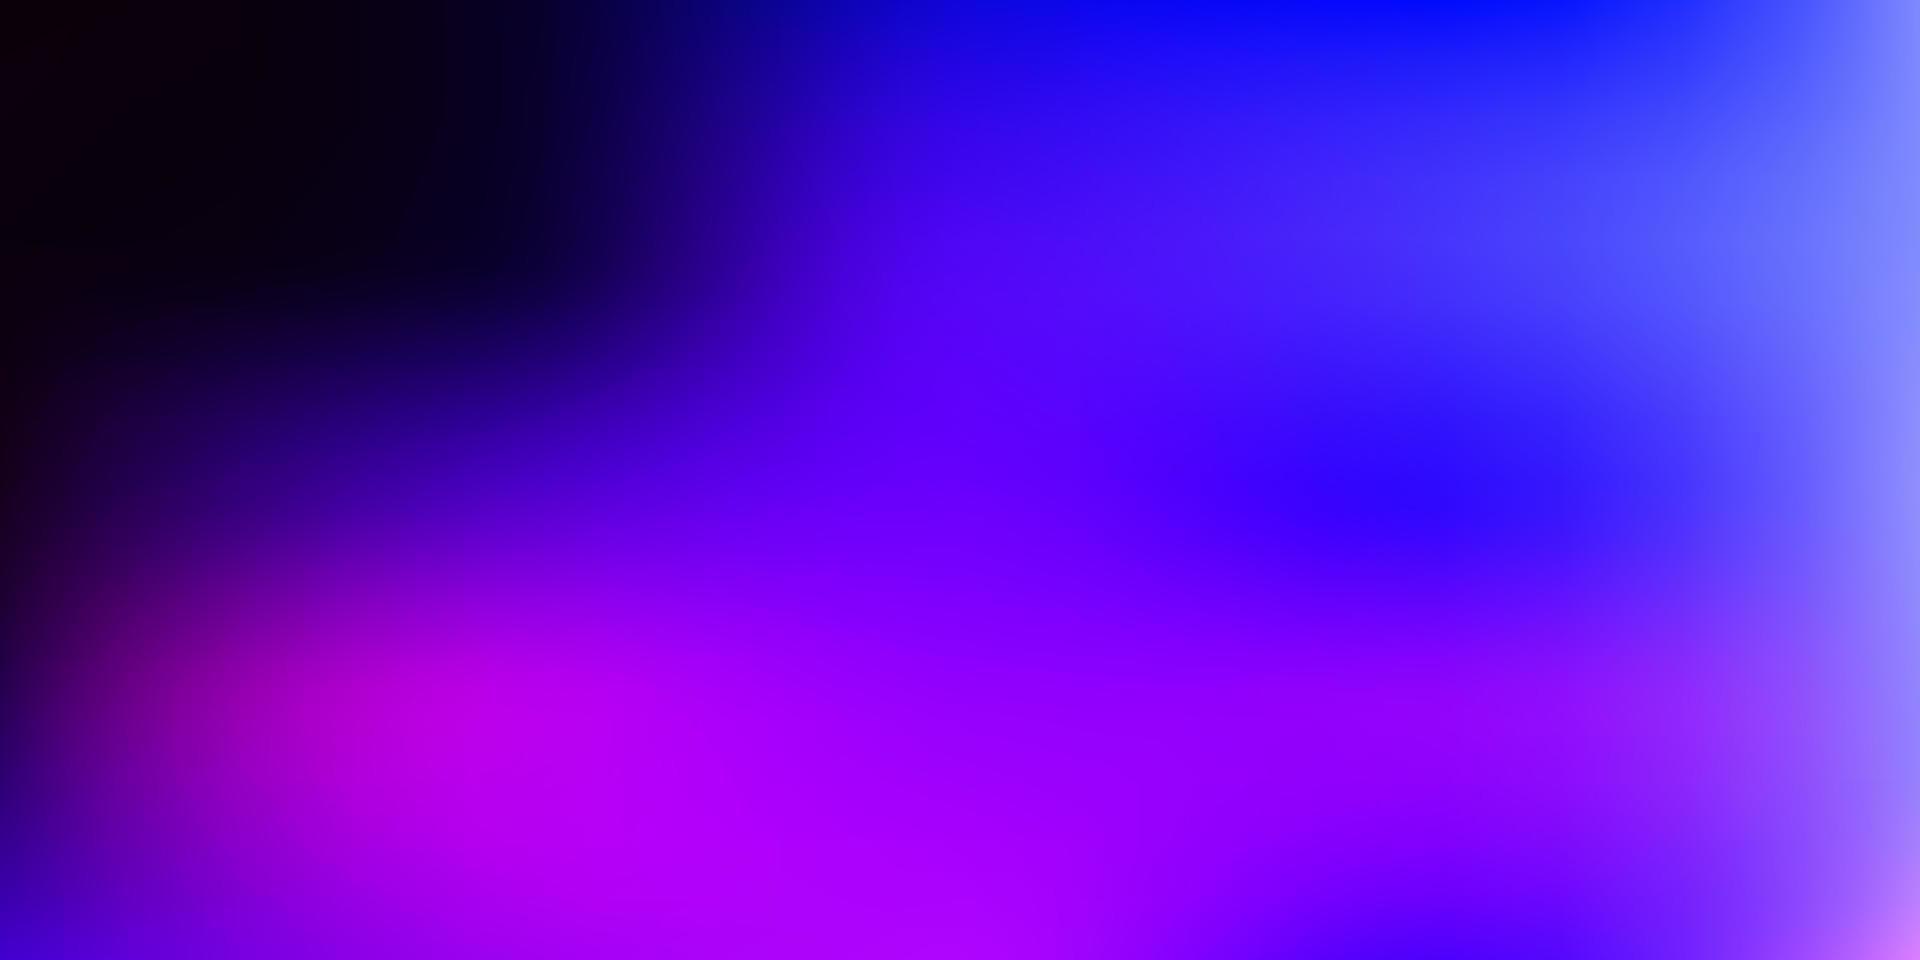 ljusrosa, blå suddighetsmönster för vektor. vektor